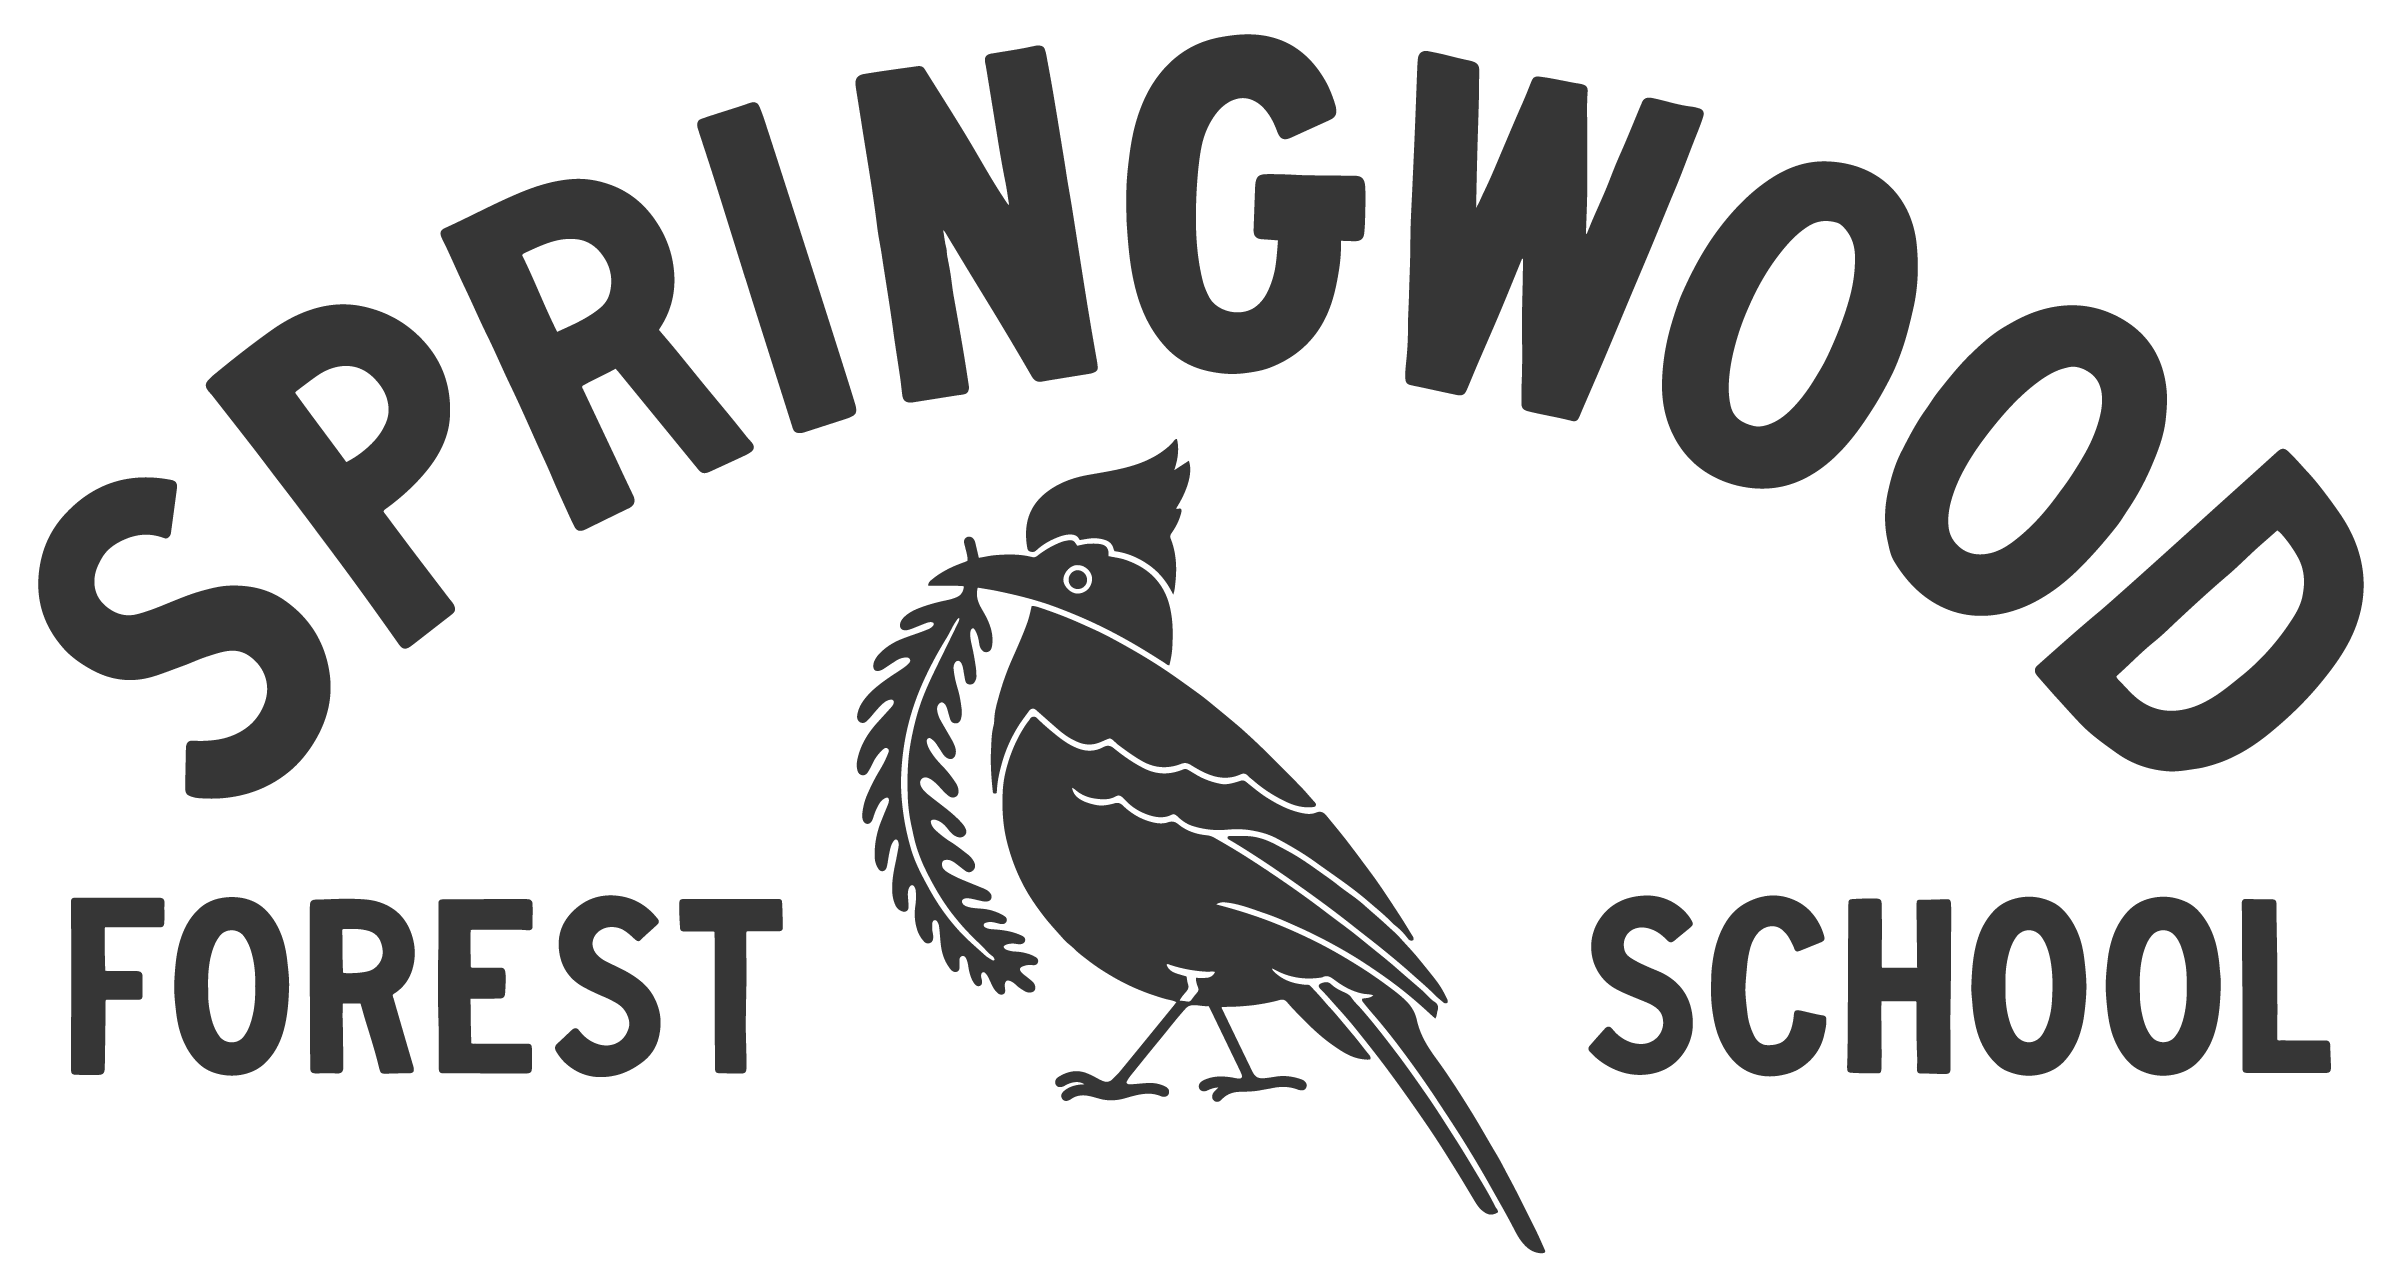 Springwood Forest School